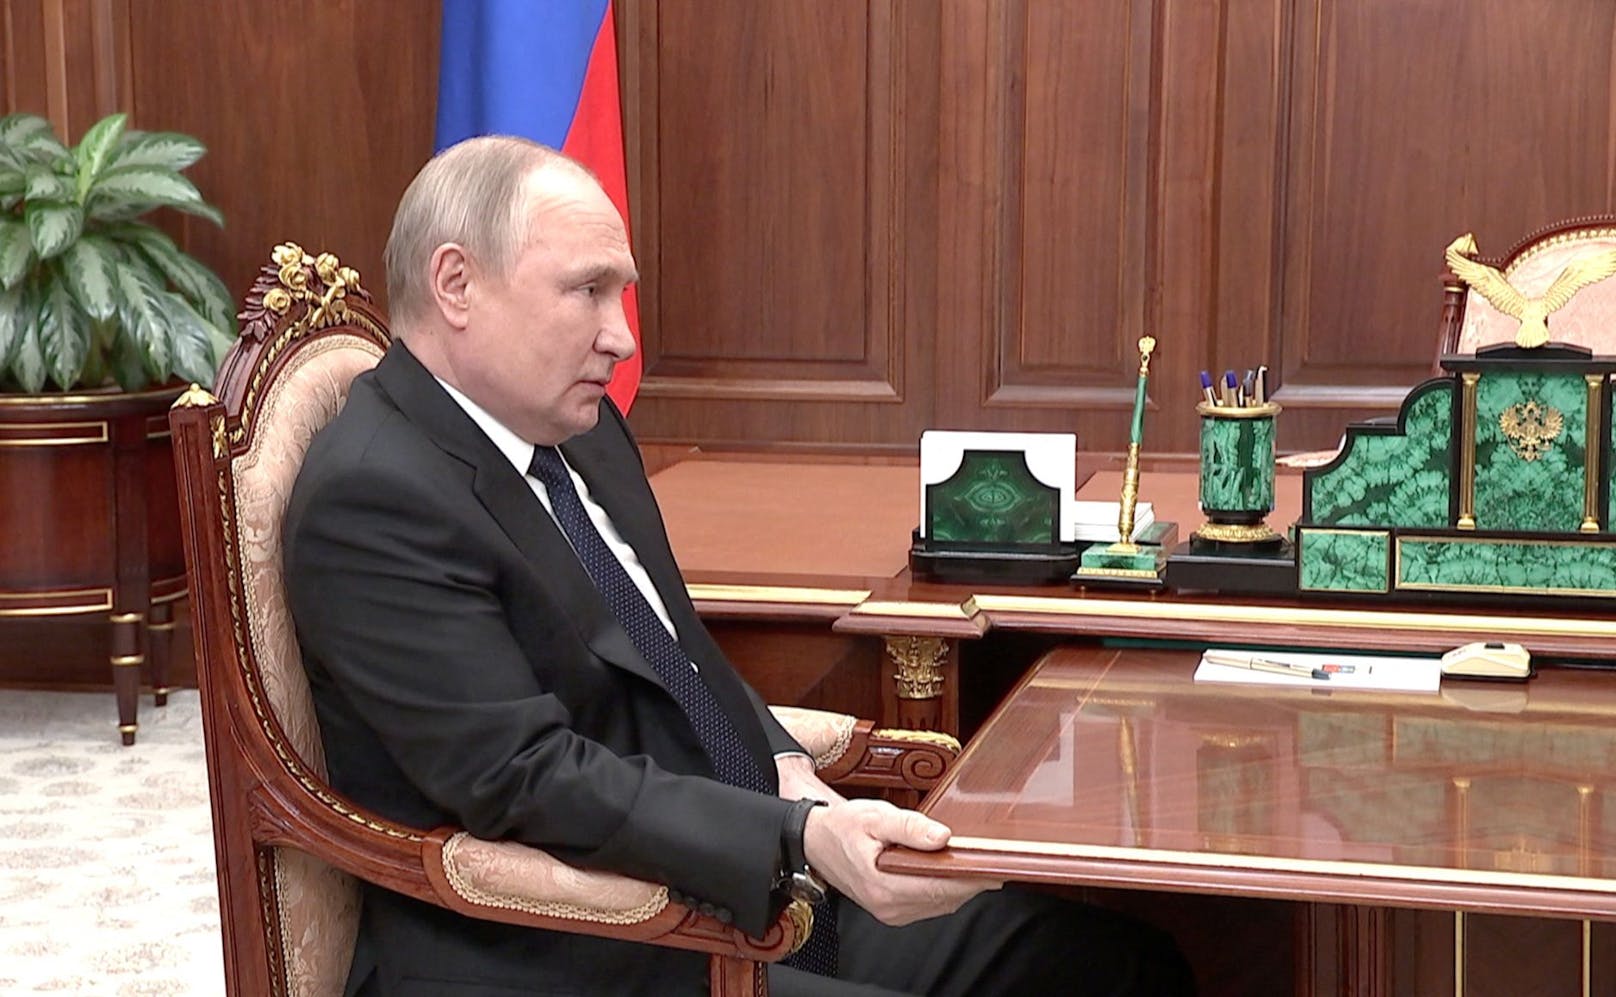 Bilder wie dieses von einem Treffen Putins mit Verteidigungsminister Schoigu nähren die Spekulationen um eine mögliche Erkrankung.